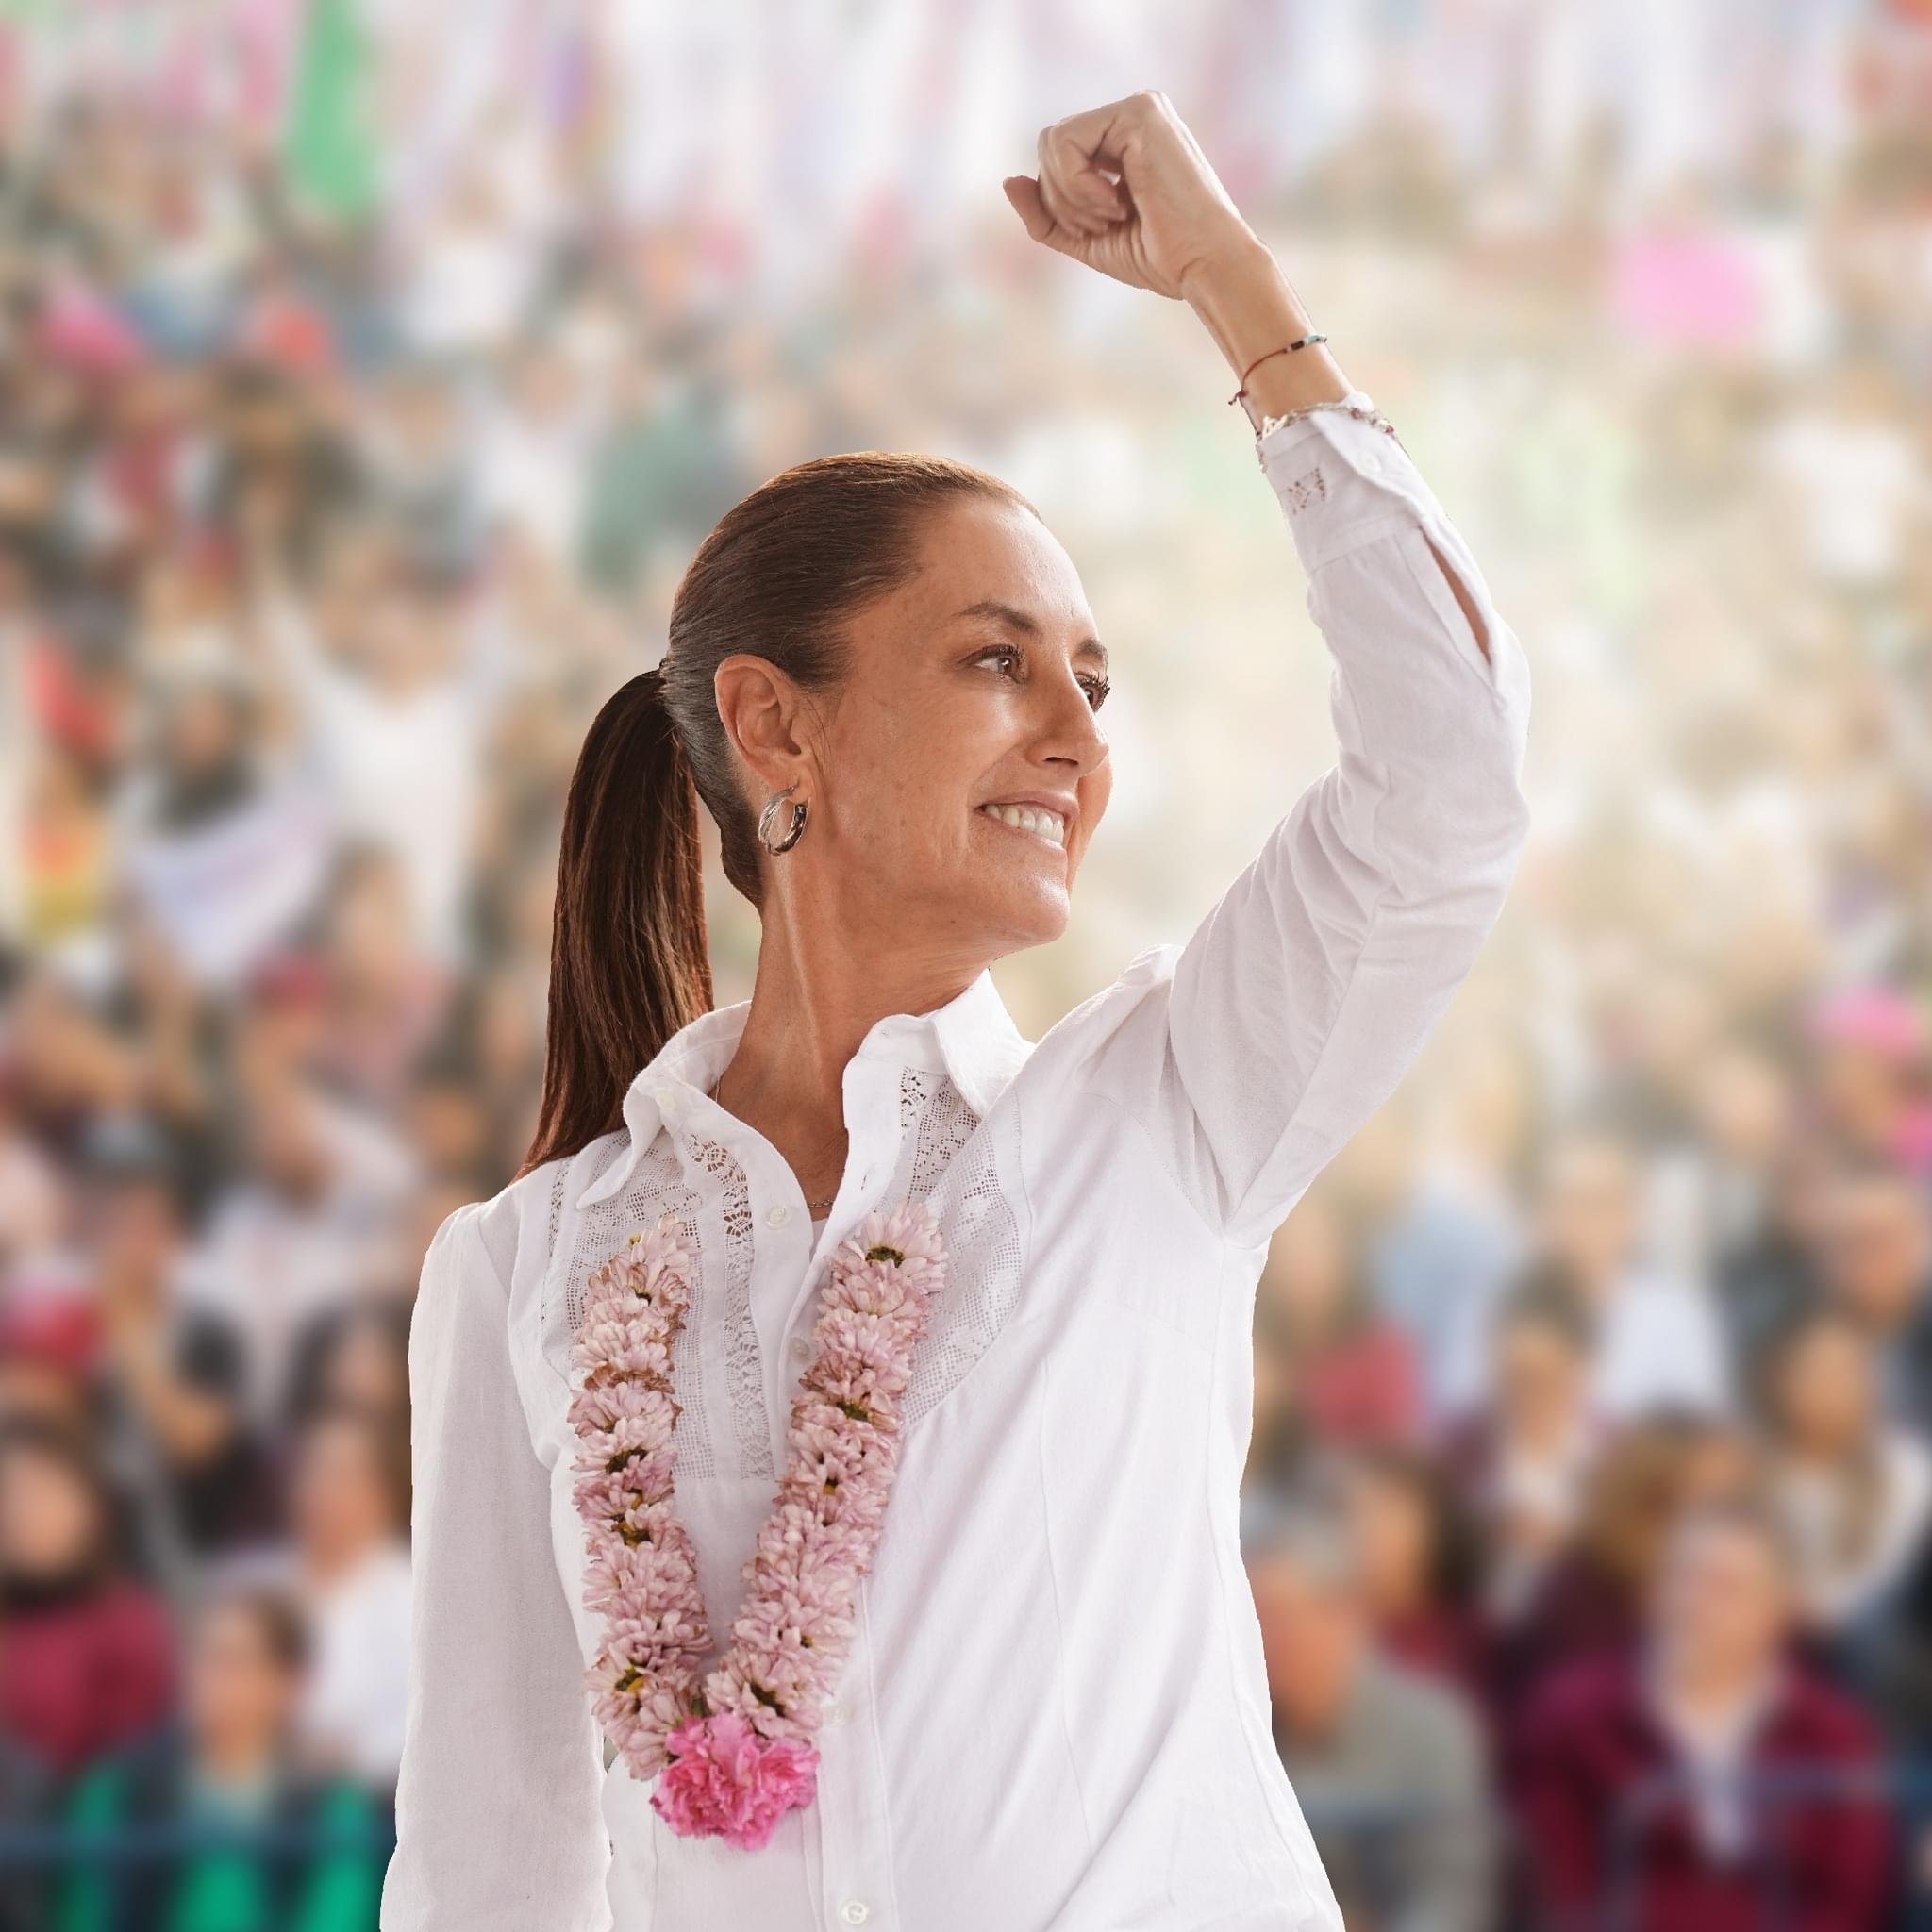 Claudia Sheinbaum, presidenta electa de México.